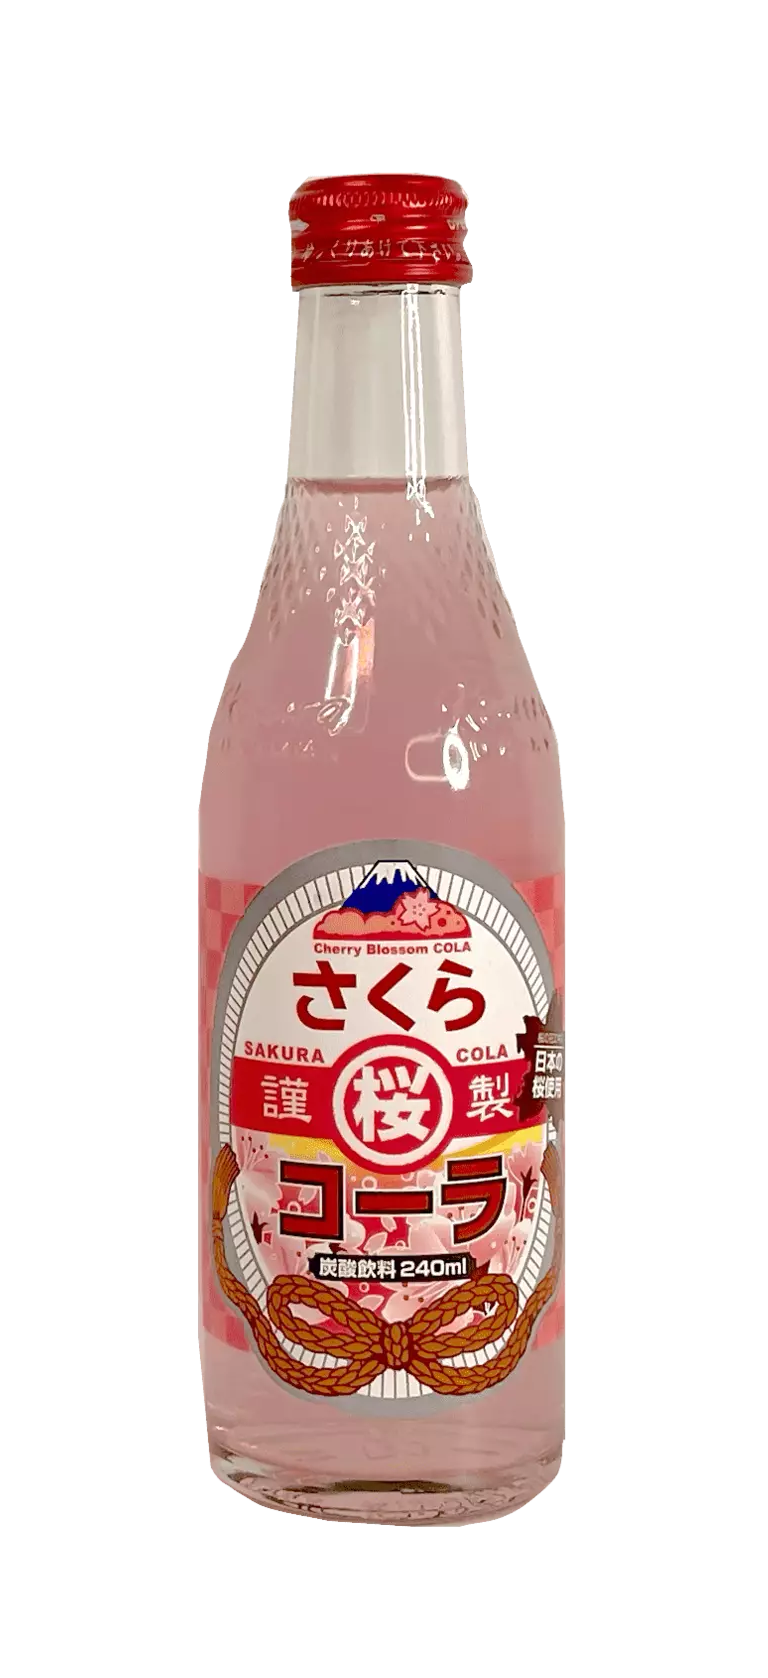 MT. Fuji Cider Sakura Cola 240ml Japan